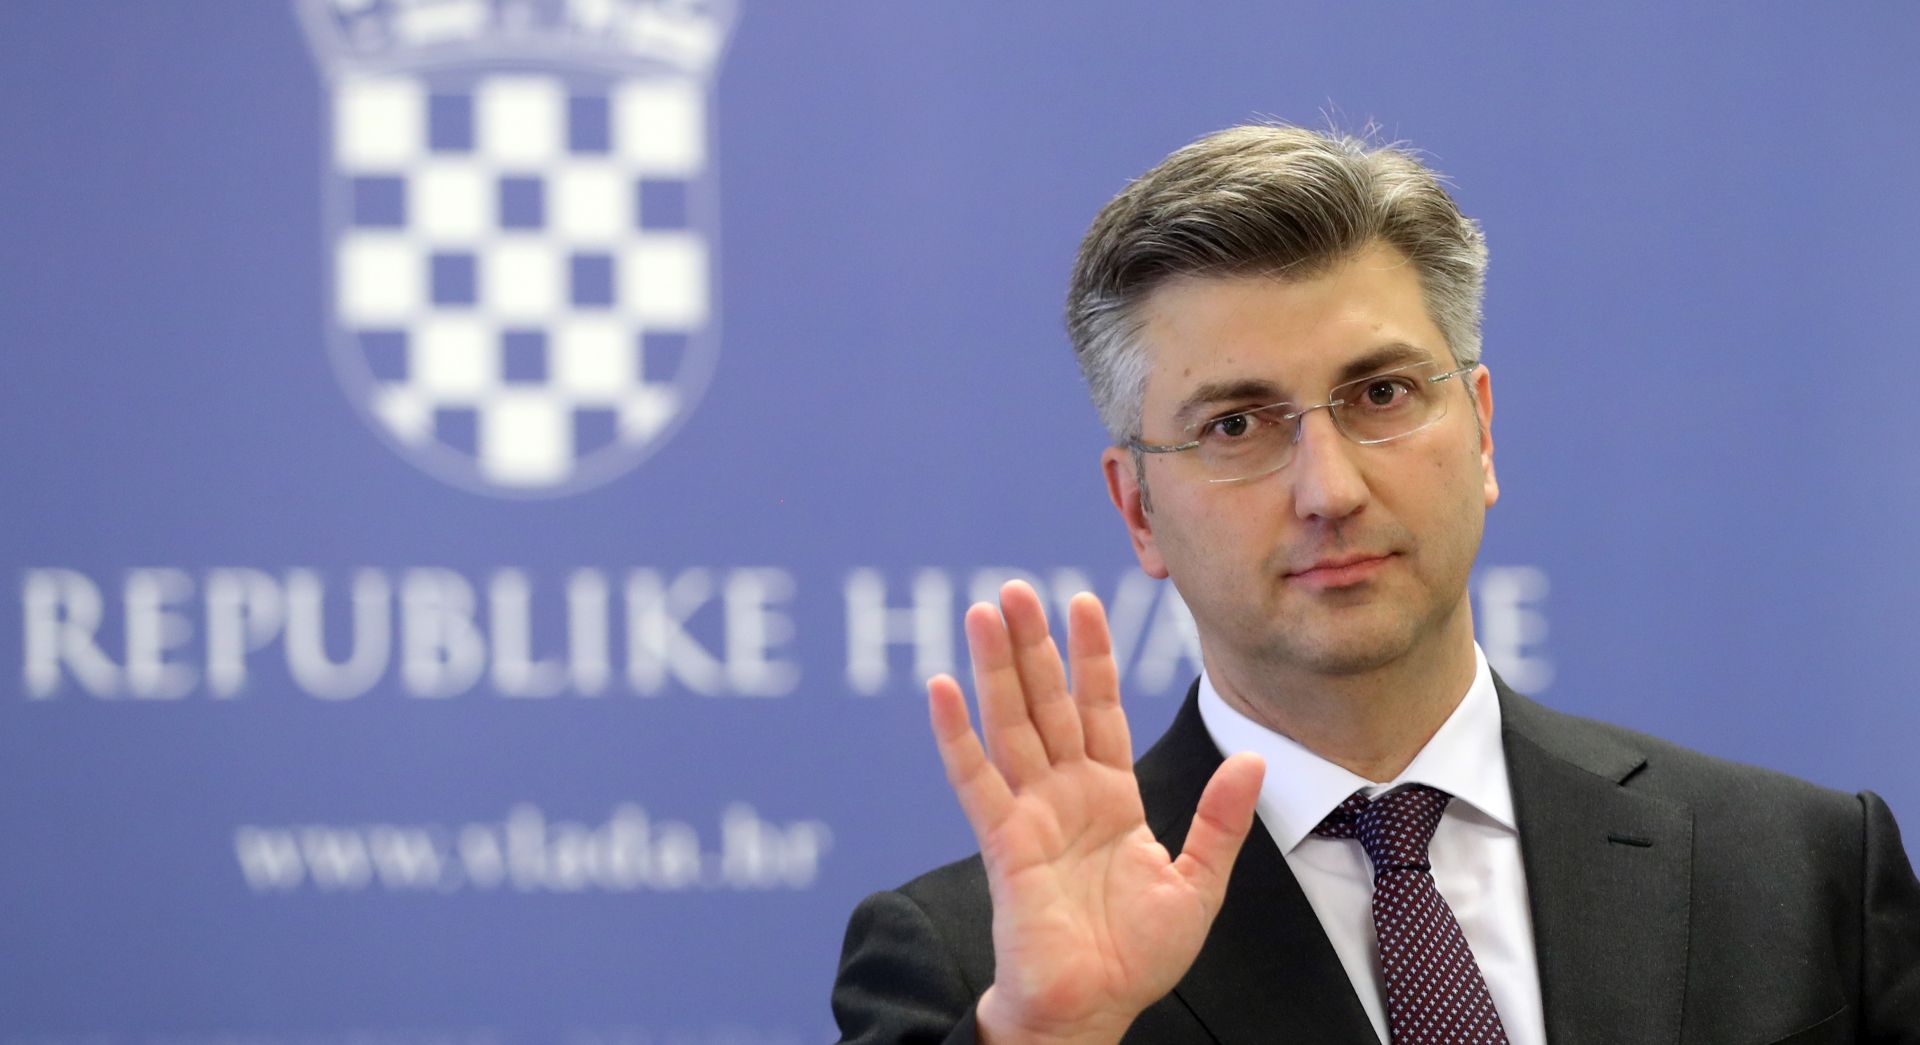 PLENKOVIĆ ‘HDZ će ostvariti parlamentarnu većinu, novi izbori nisu realni’